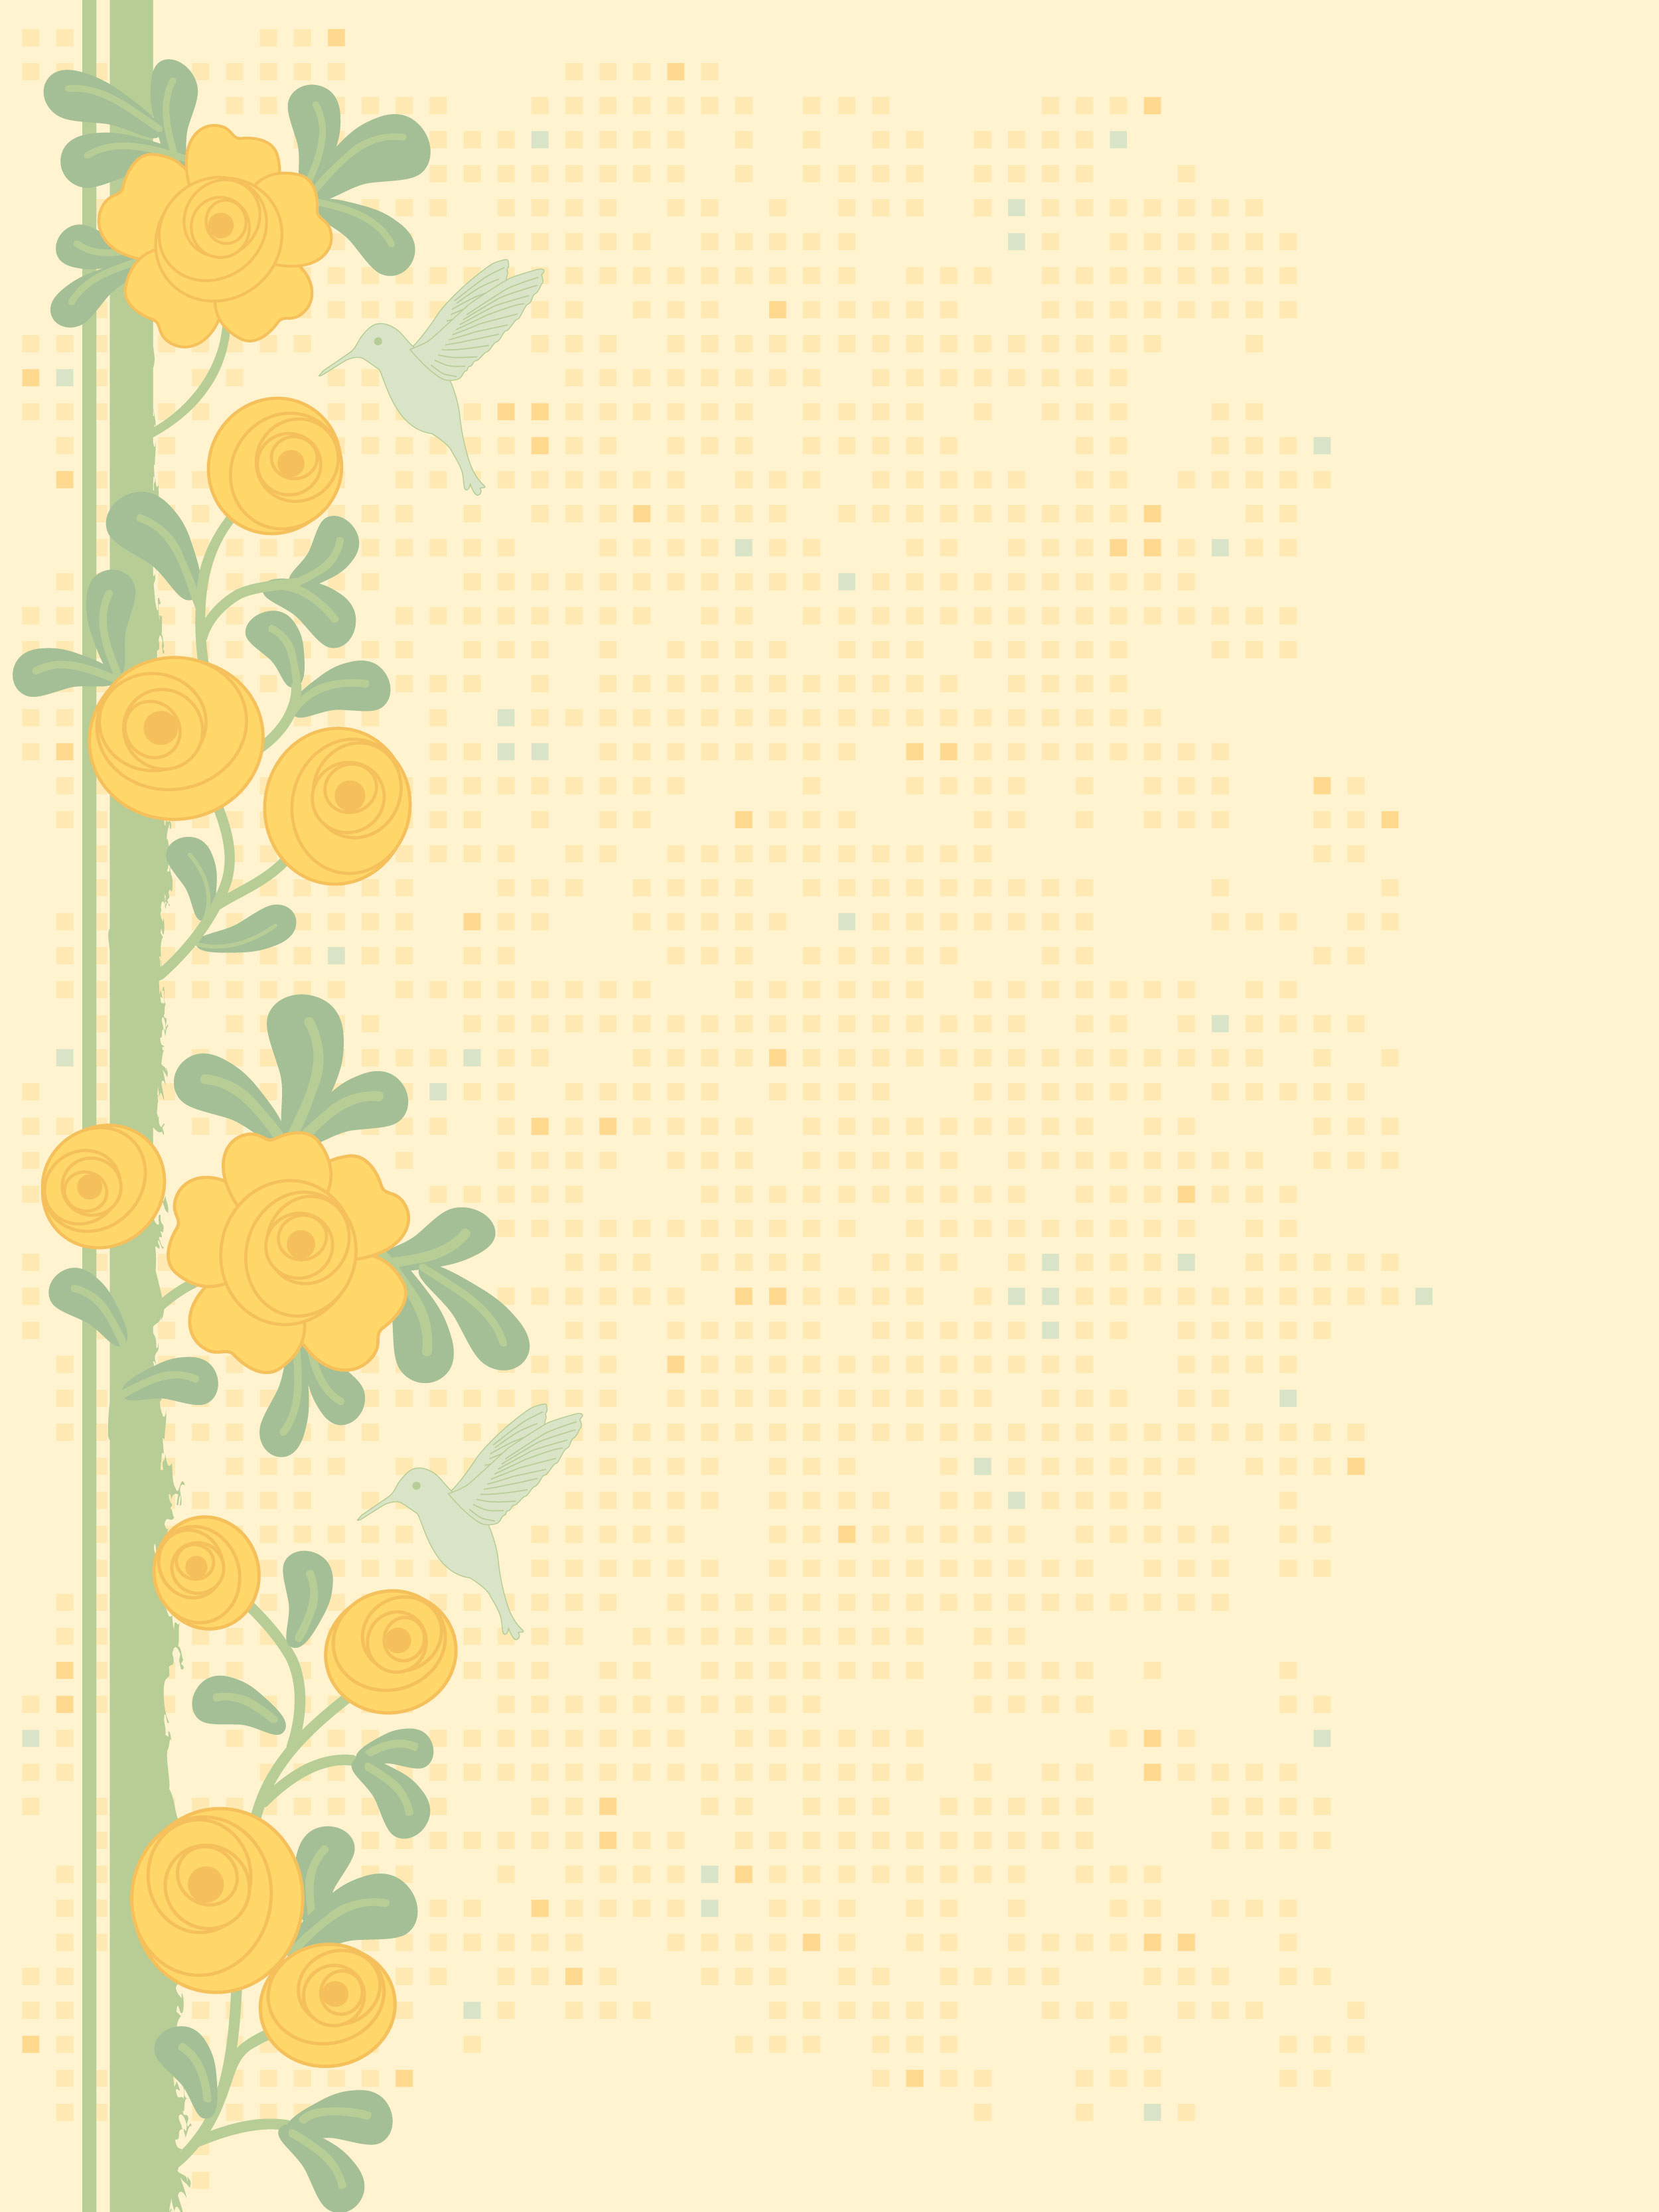 黄色の花のイラスト フリー素材 背景 壁紙no 317 オレンジ 茎葉 ポップ